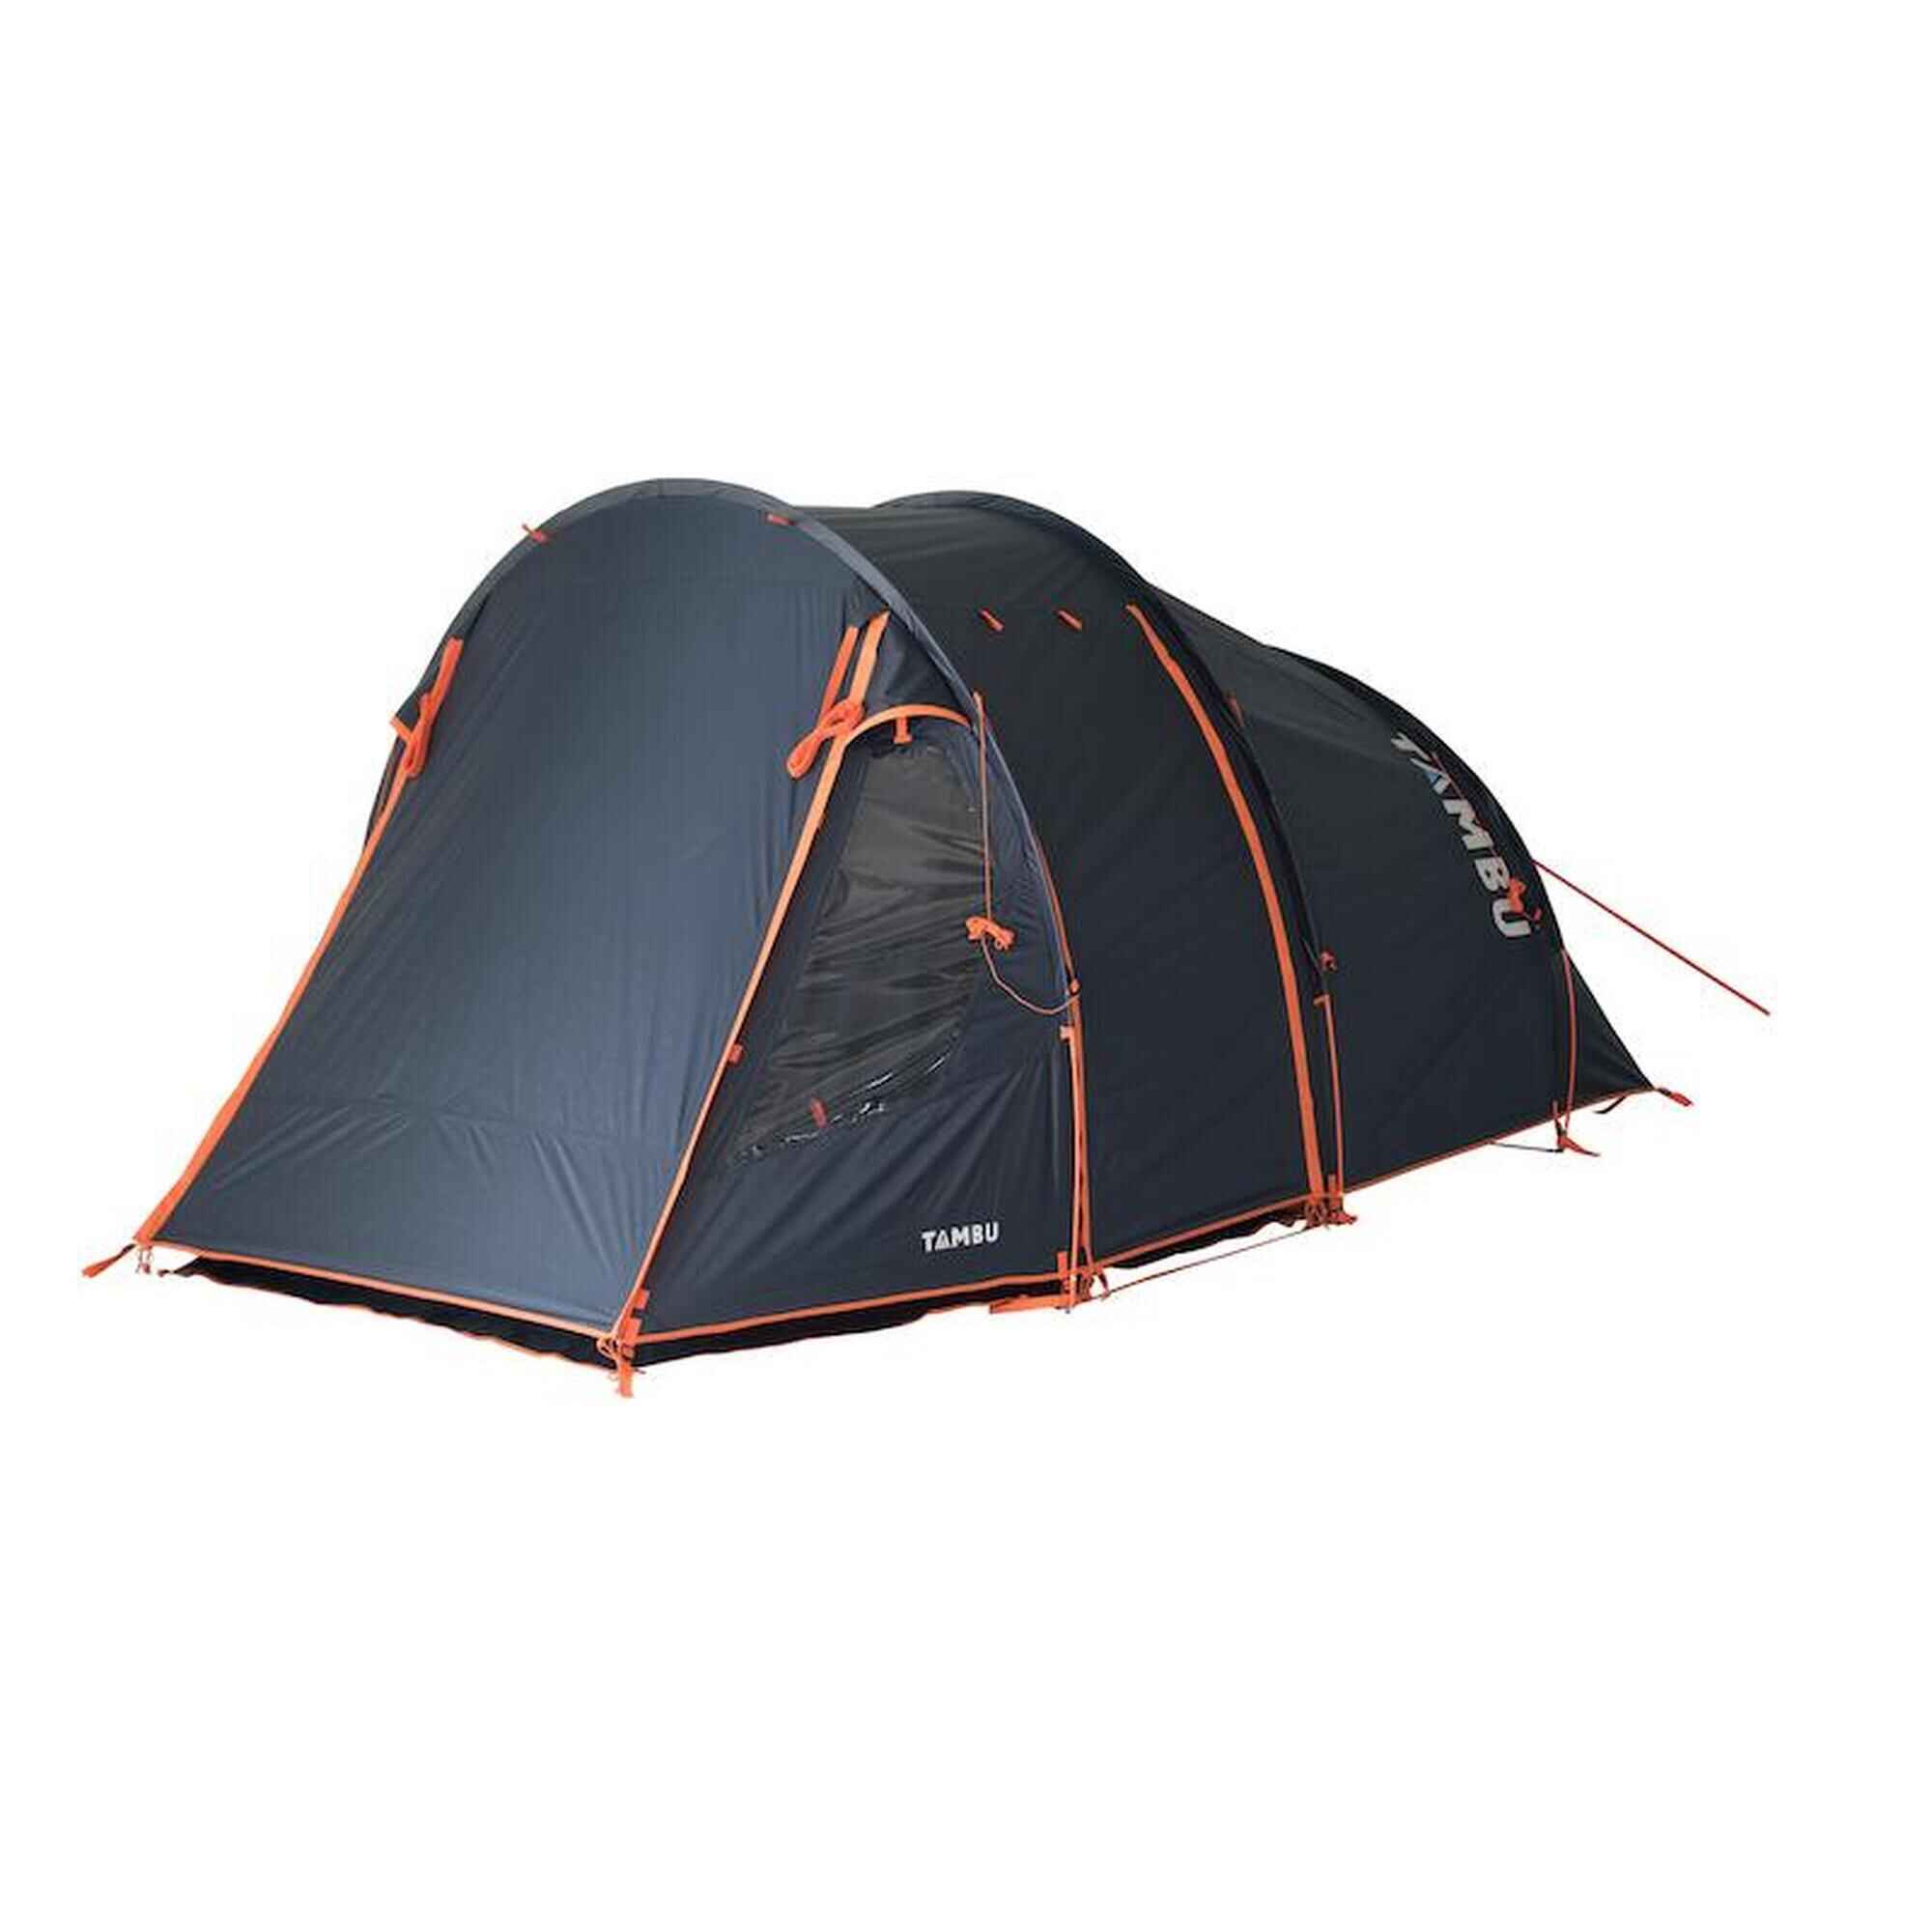 4 Personen Zelt | 4 Mann Zelte zu starken Preisen ! ✓